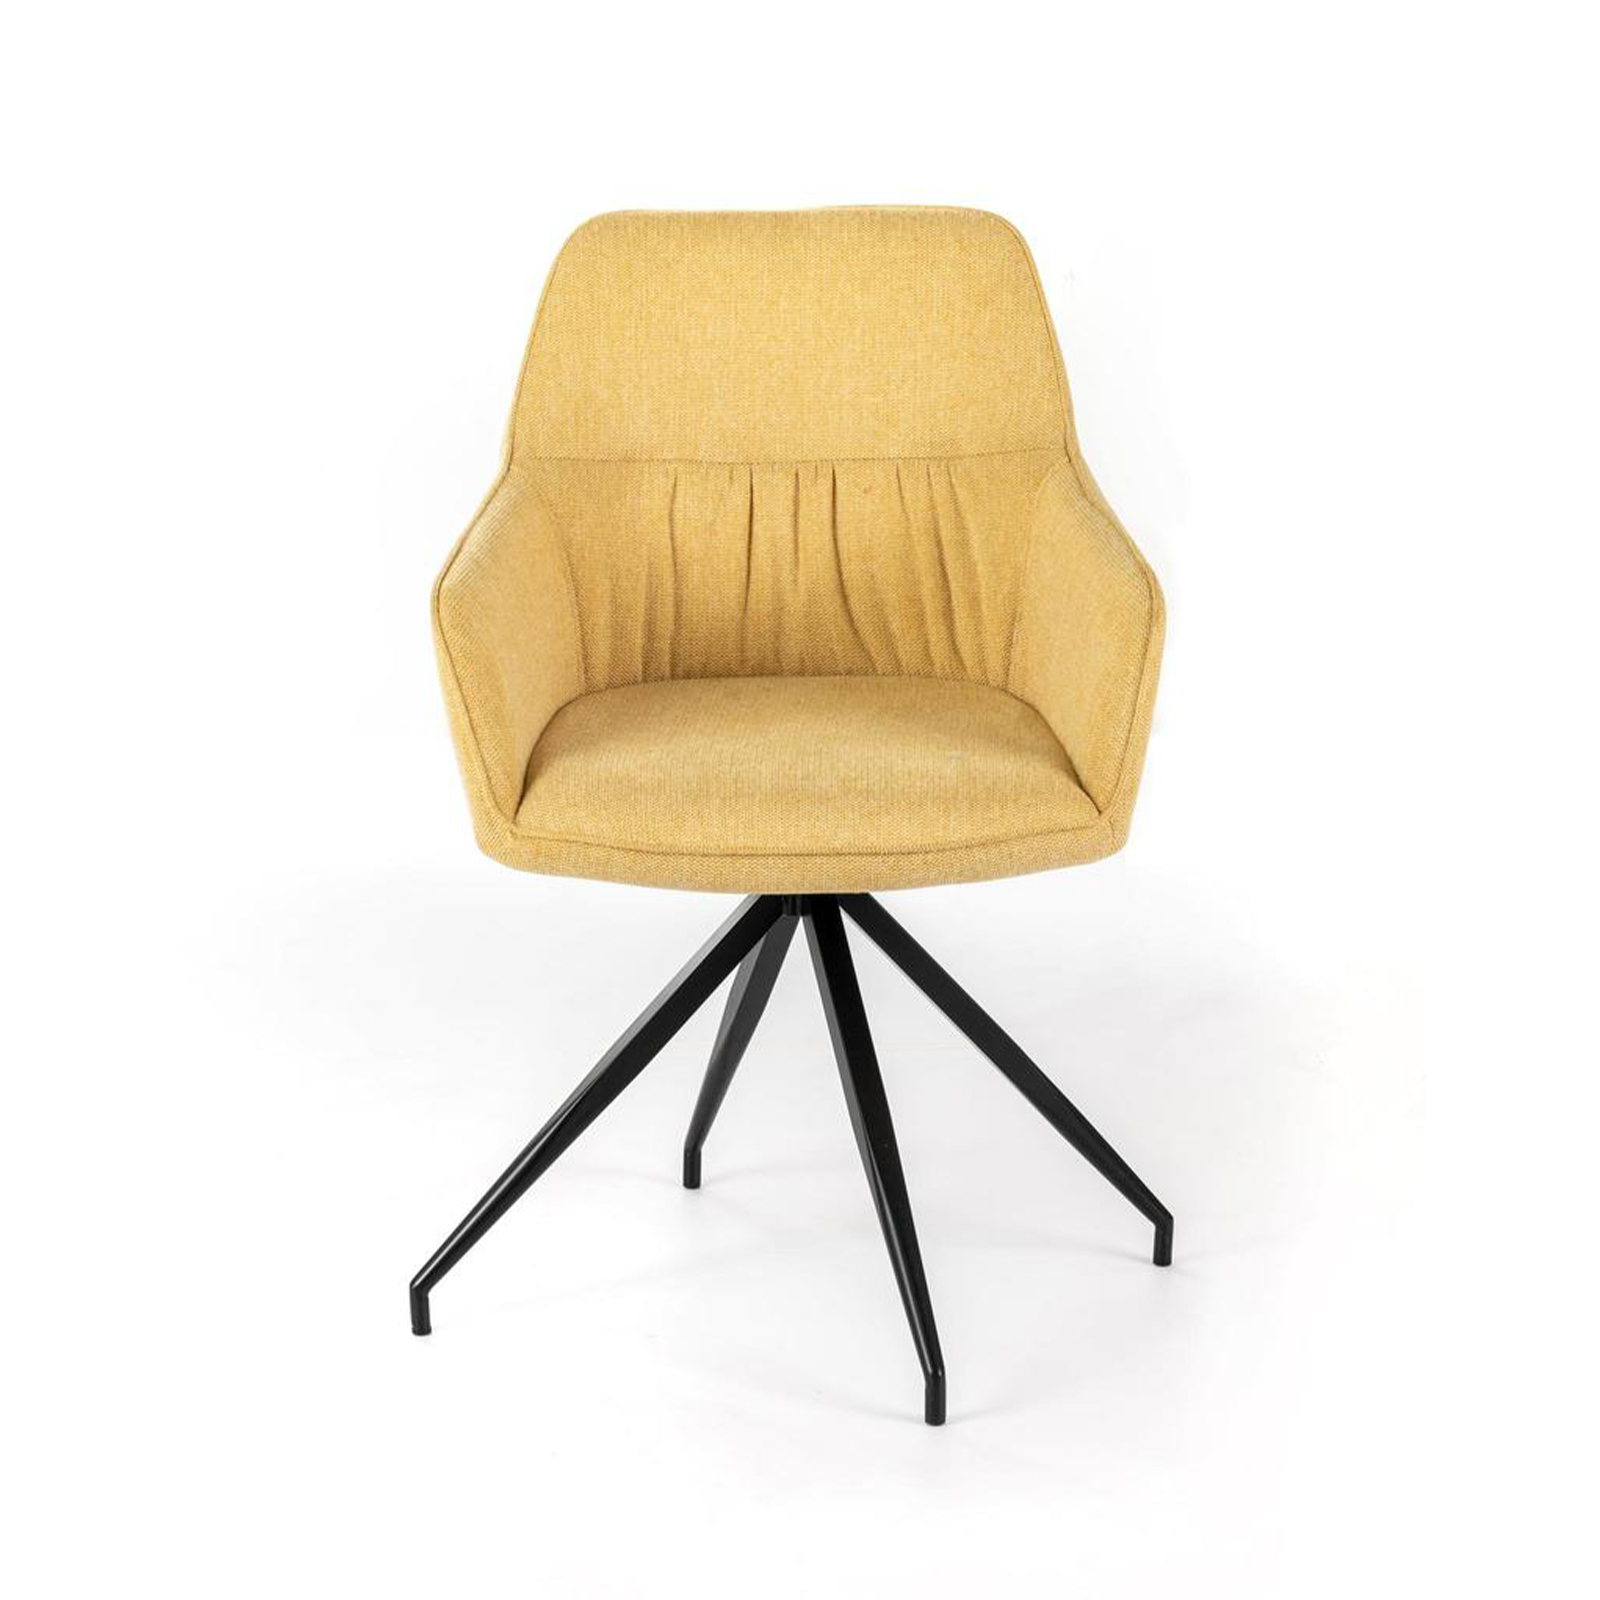 Set di sedie imbottite "Gaia" poltrone moderne da soggiorno in tessuto